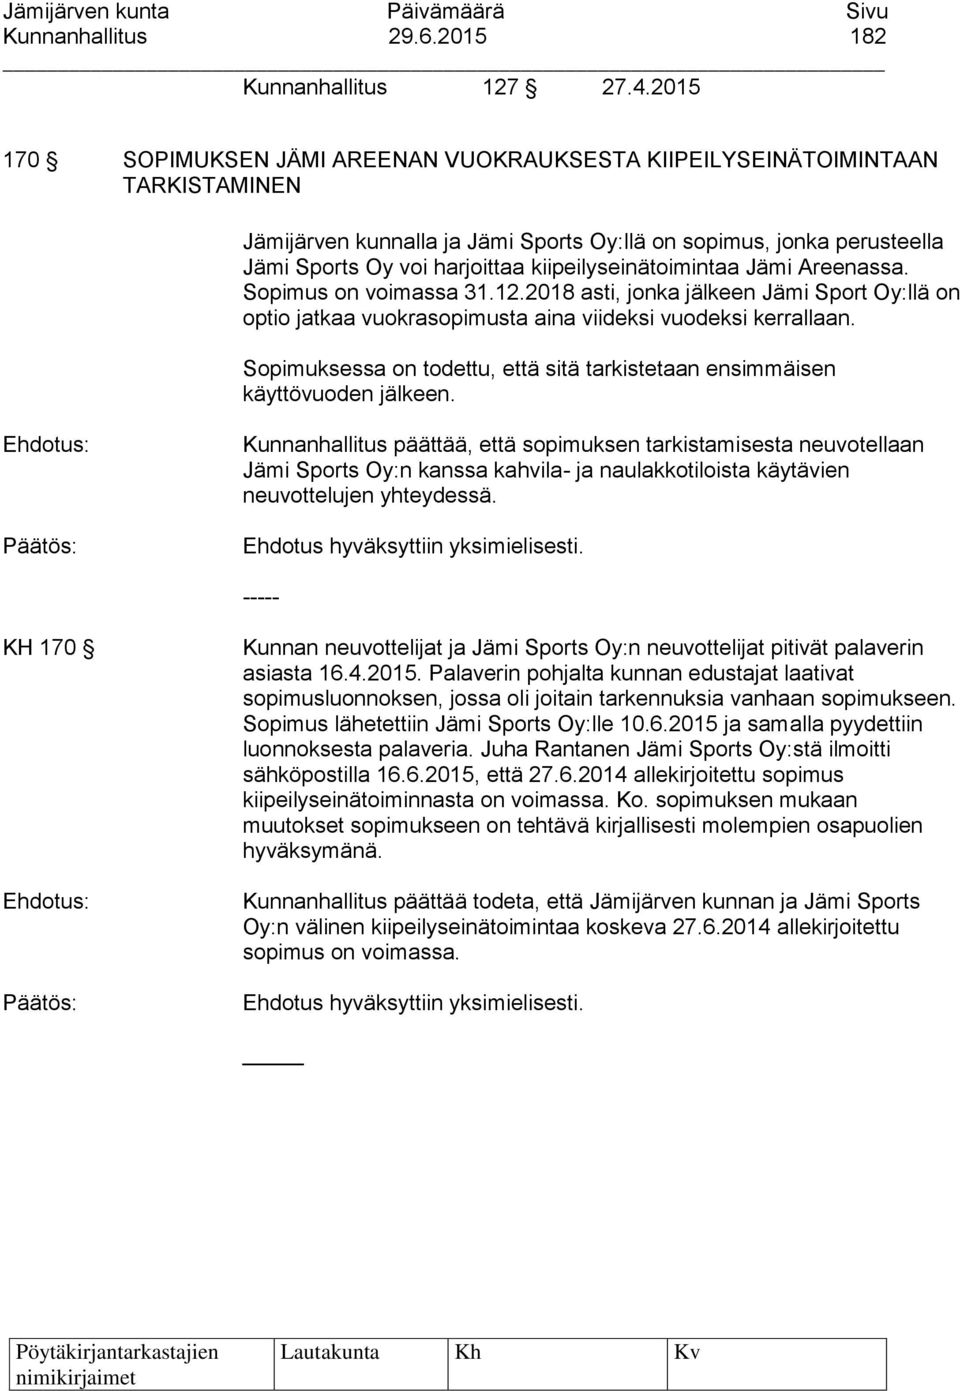 kiipeilyseinätoimintaa Jämi Areenassa. Sopimus on voimassa 31.12.2018 asti, jonka jälkeen Jämi Sport Oy:llä on optio jatkaa vuokrasopimusta aina viideksi vuodeksi kerrallaan.